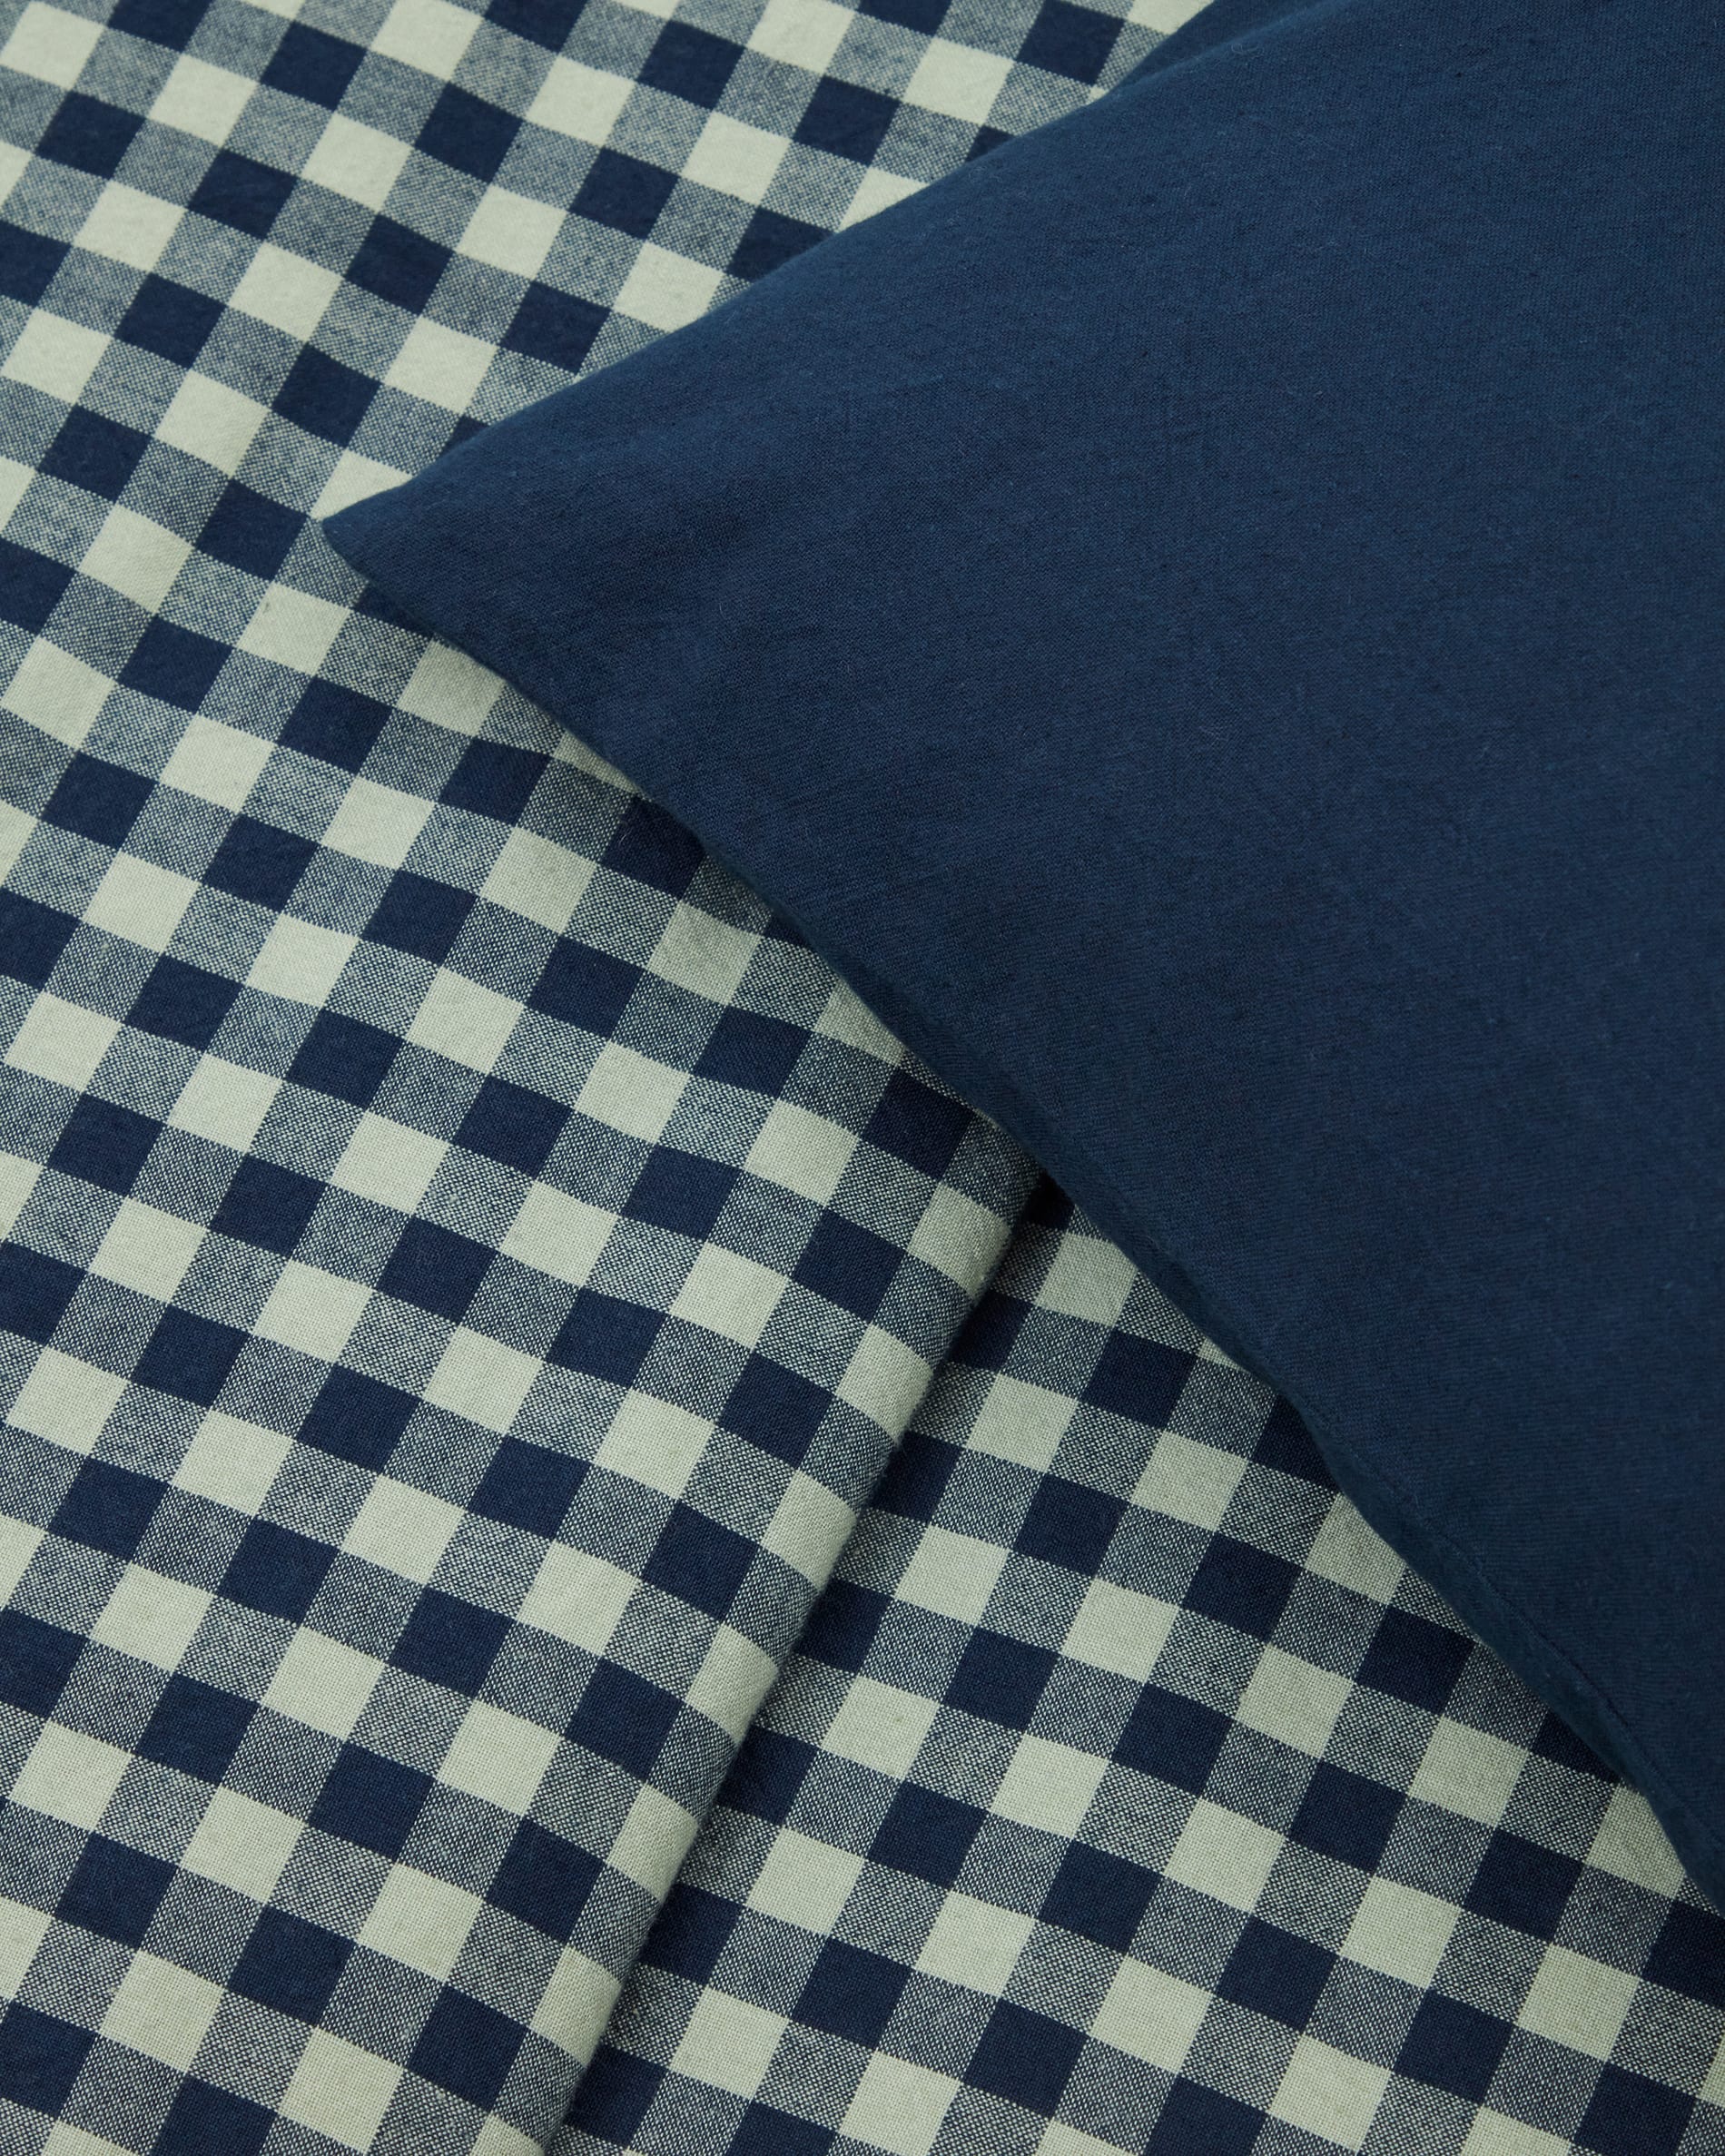 Set Yanil fundas nórdica almohada bajera 100% algodón cuadros rosa y beige  cama 90 cm